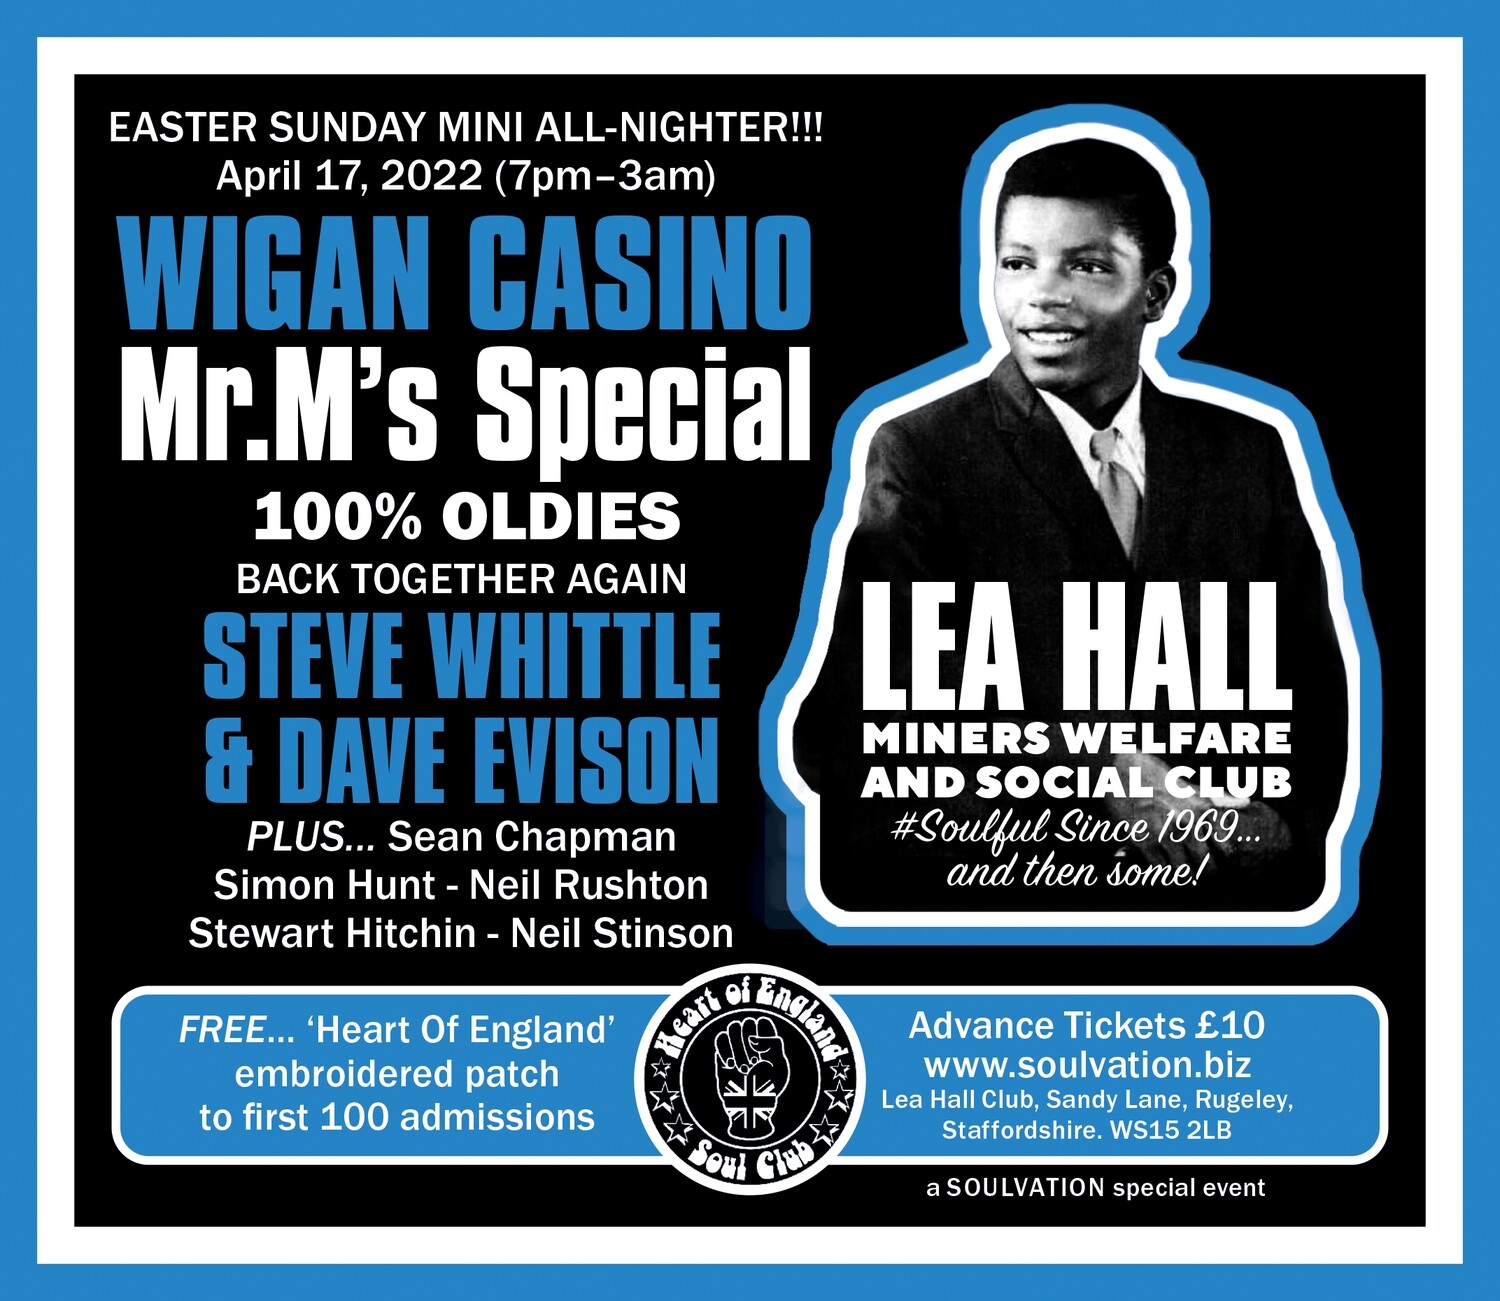 Lea Hall East Sunday Mini All-Nighter £10 plus £1 handling fee